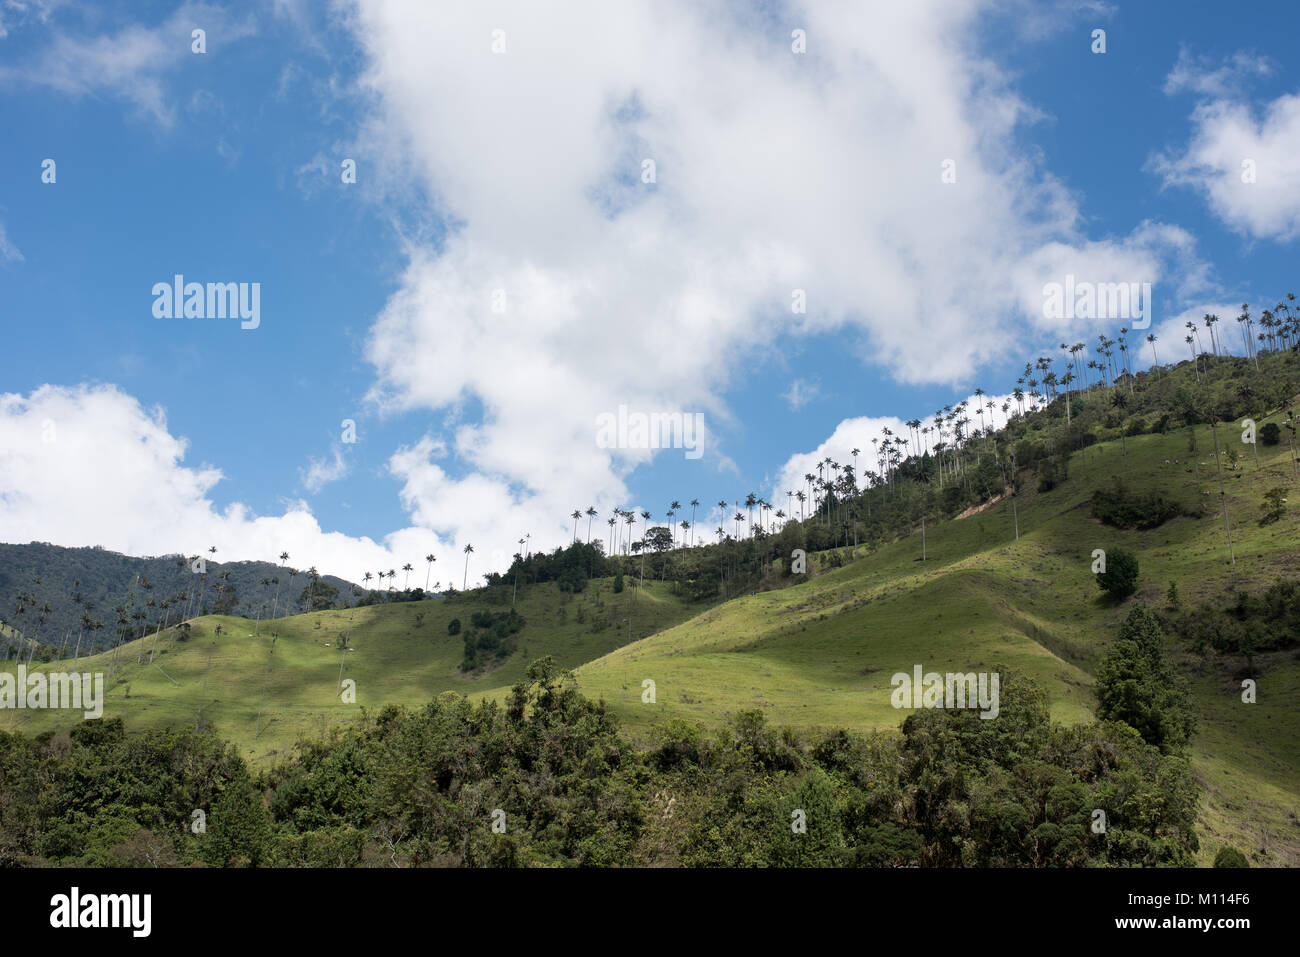 La vallée de Cocora près de Salento avec paysage enchanteur de pins et d'eucalyptus dominé par le fameux géant wax palms, ciel bleu clair, Colombie Banque D'Images